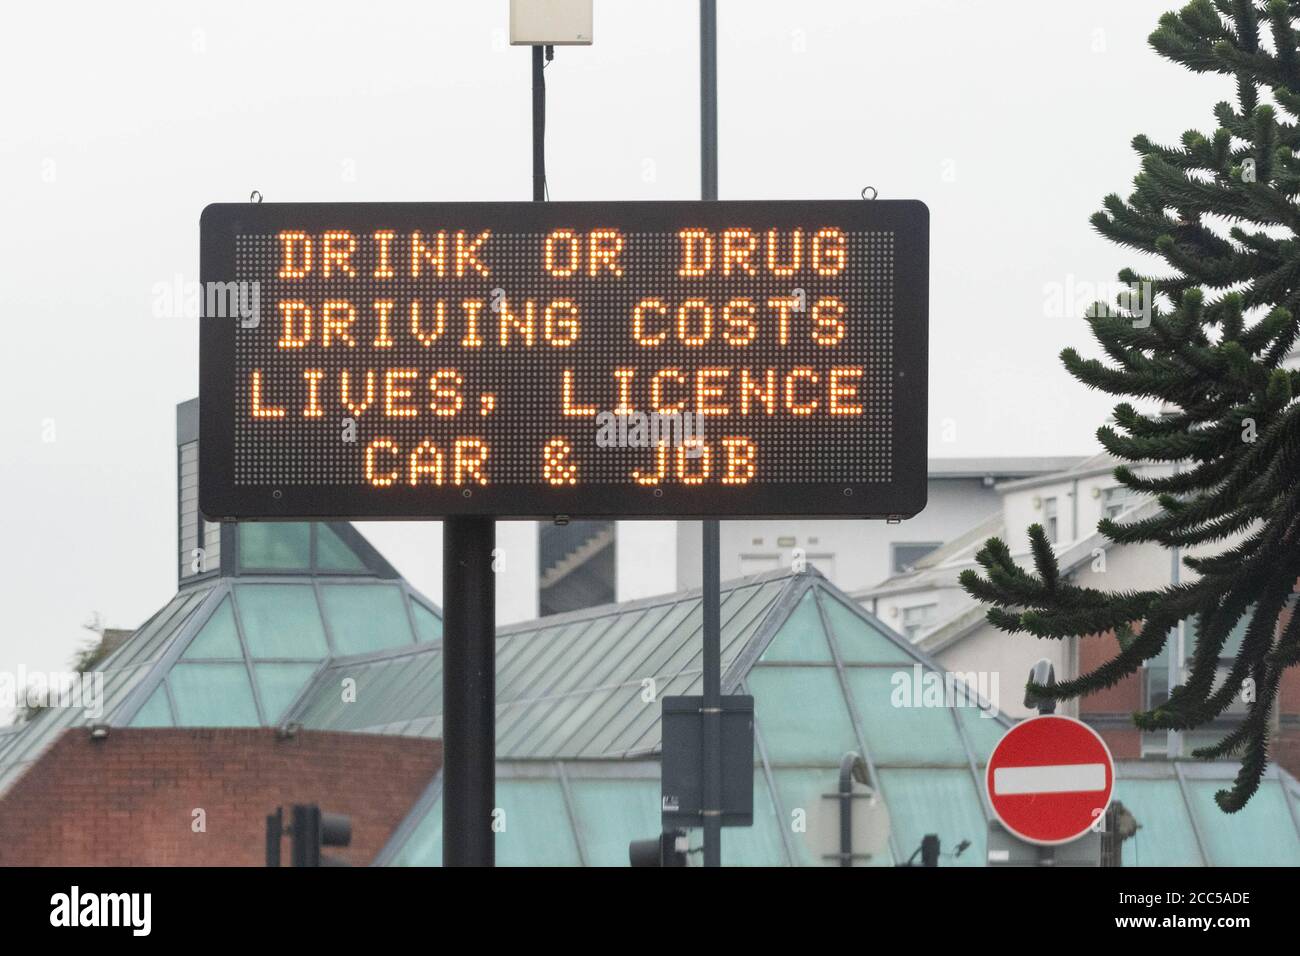 La guida di bevande o droghe costa vite umane, auto con patente e insegne lavorative a Leeds, West Yorkshire, Inghilterra, Regno Unito Foto Stock